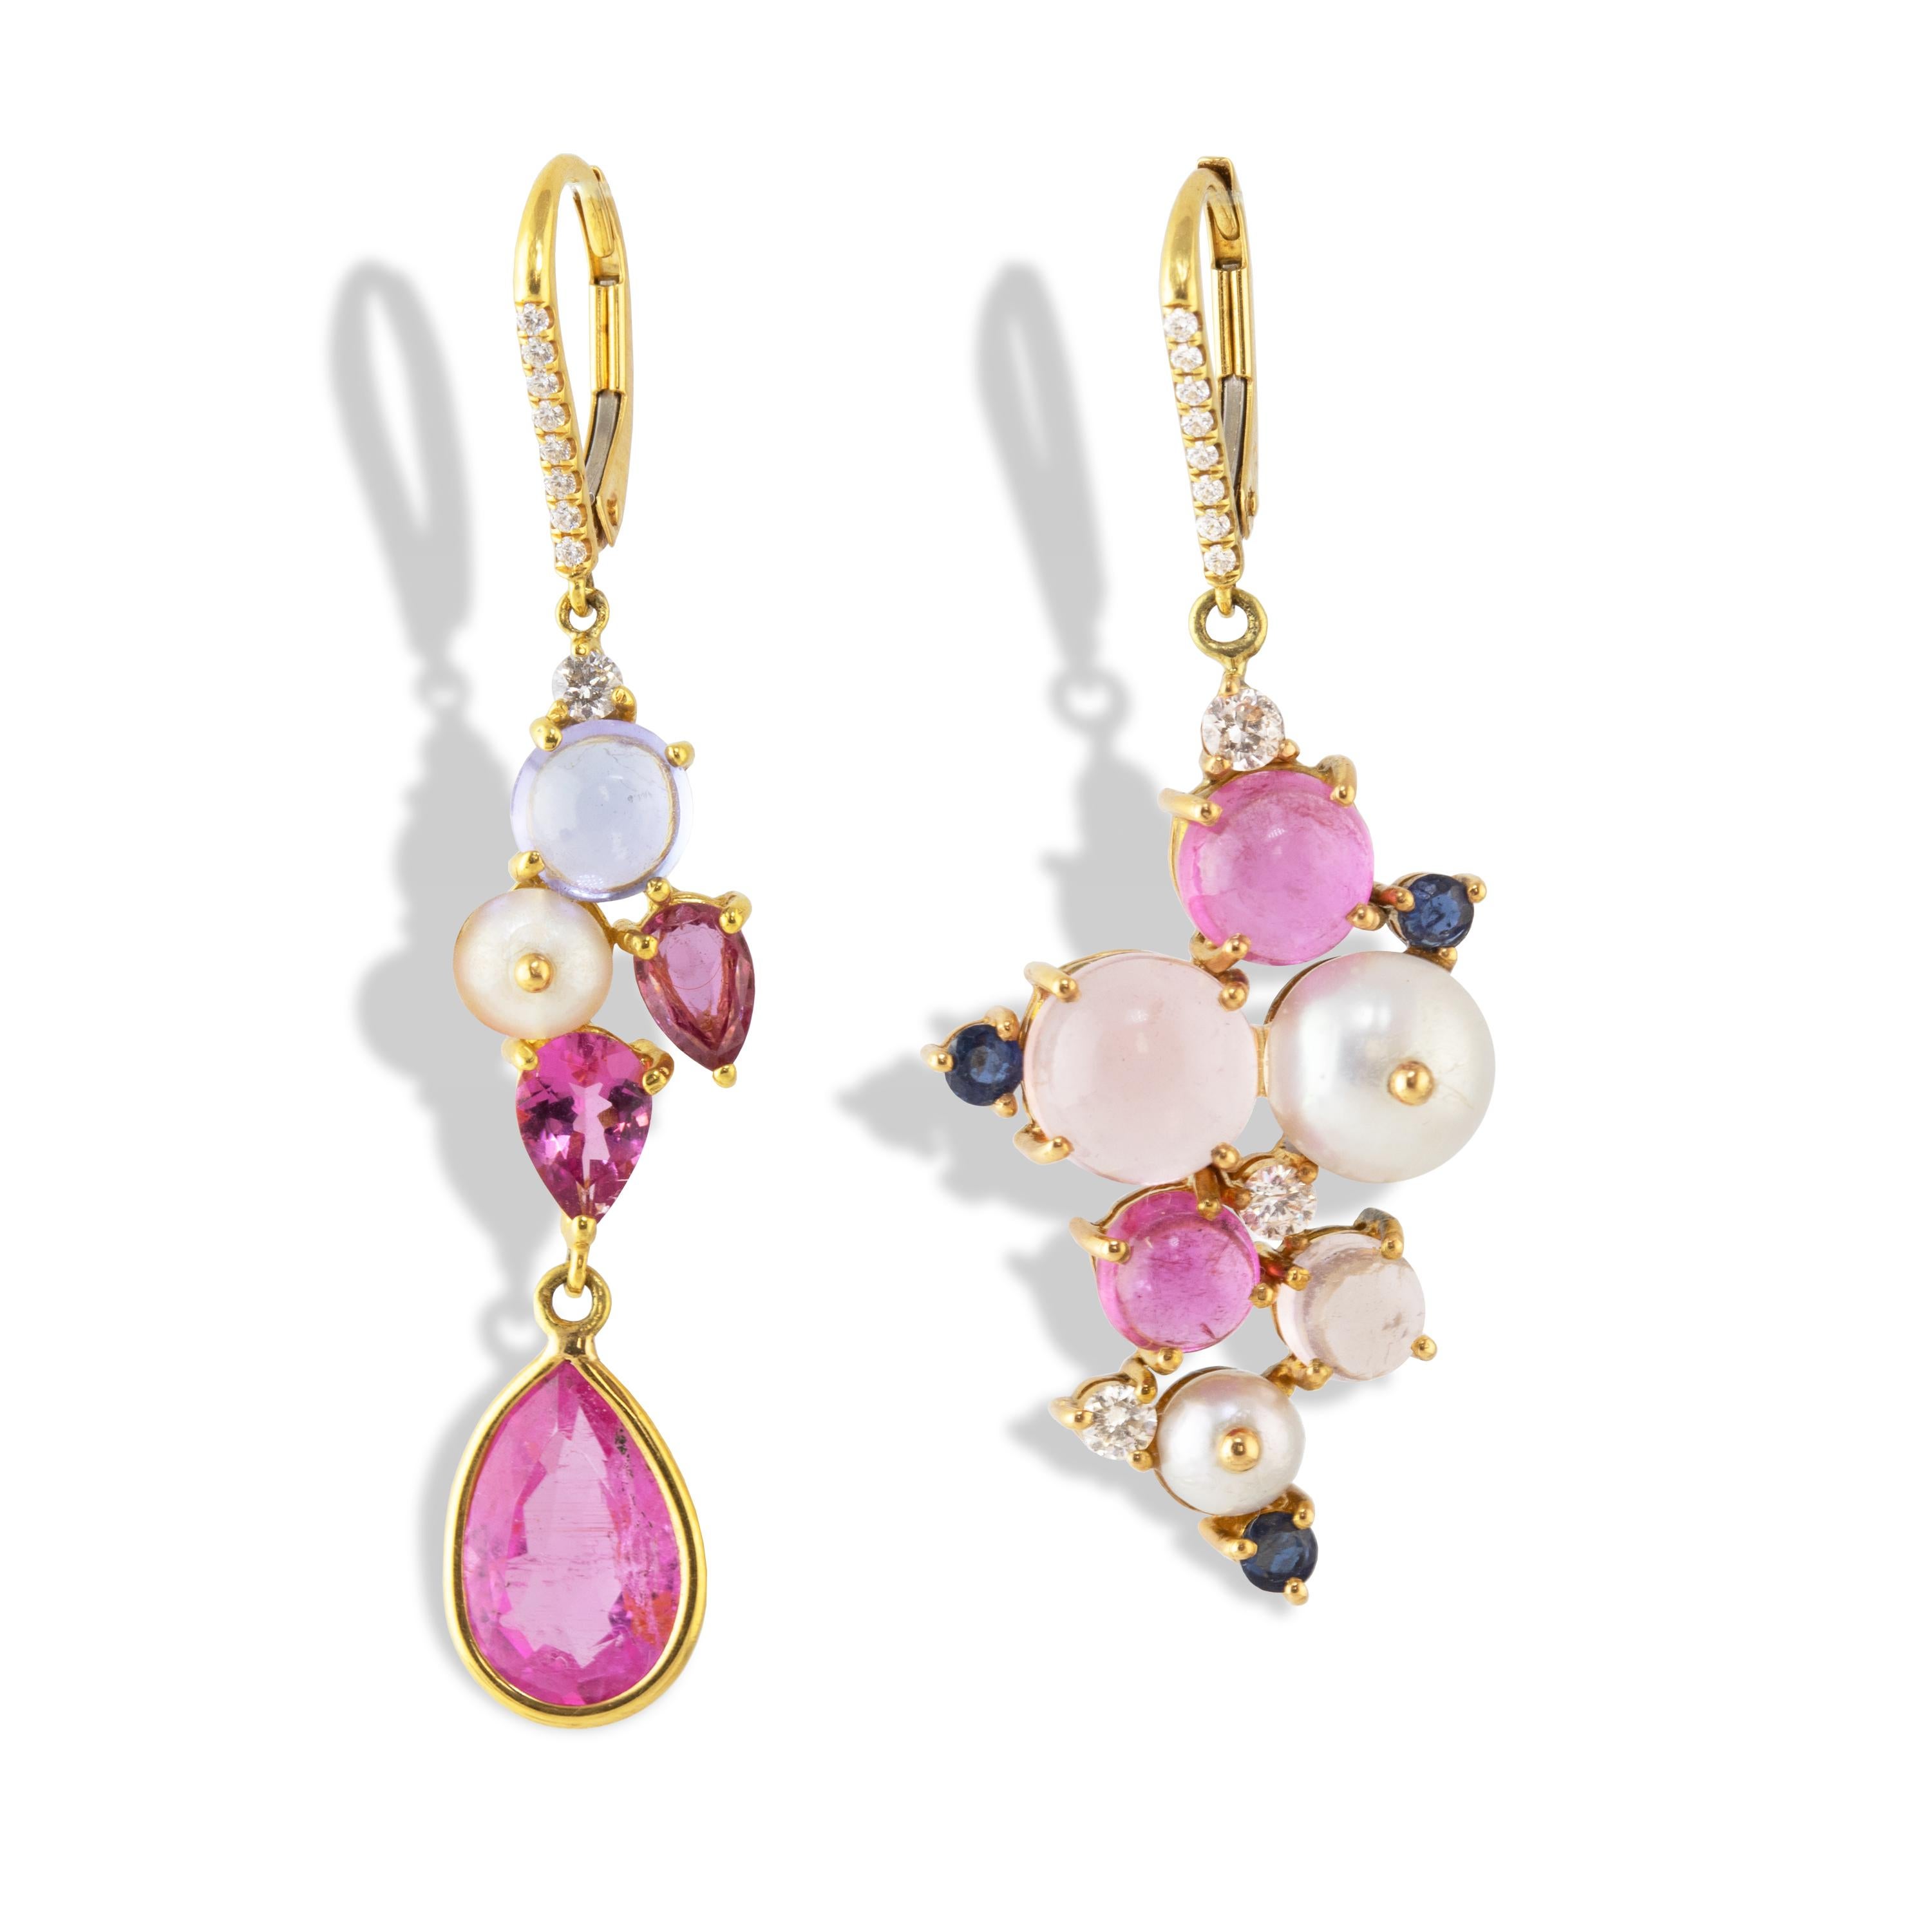 Paire de boucles d'oreilles asymétriques en forme de grappe, ornées de tourmaline rose, de tanzanite, de diamants, de saphirs et de perles, et serties en or 18 carats. 

Une boucle d'oreille présente une tourmaline rose de 3,08 carats en forme de